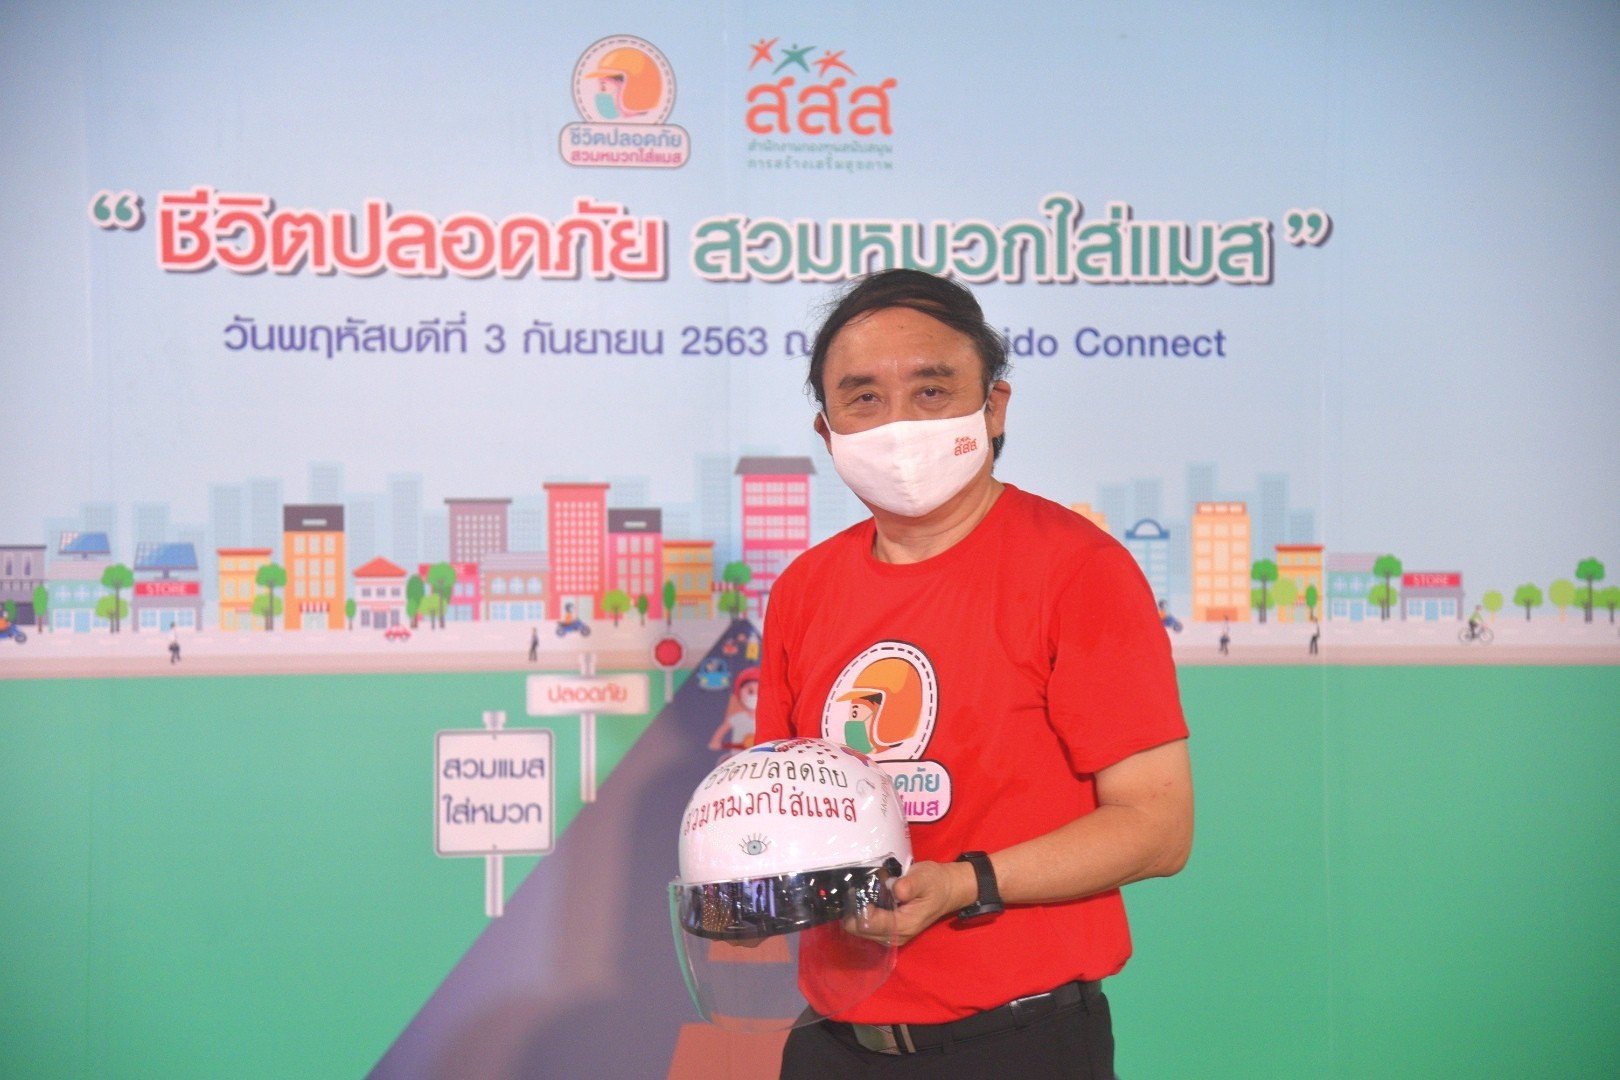 “สวมหมวก ใส่แมส”  ชีวิตปลอดภัยบนท้องถนน thaihealth